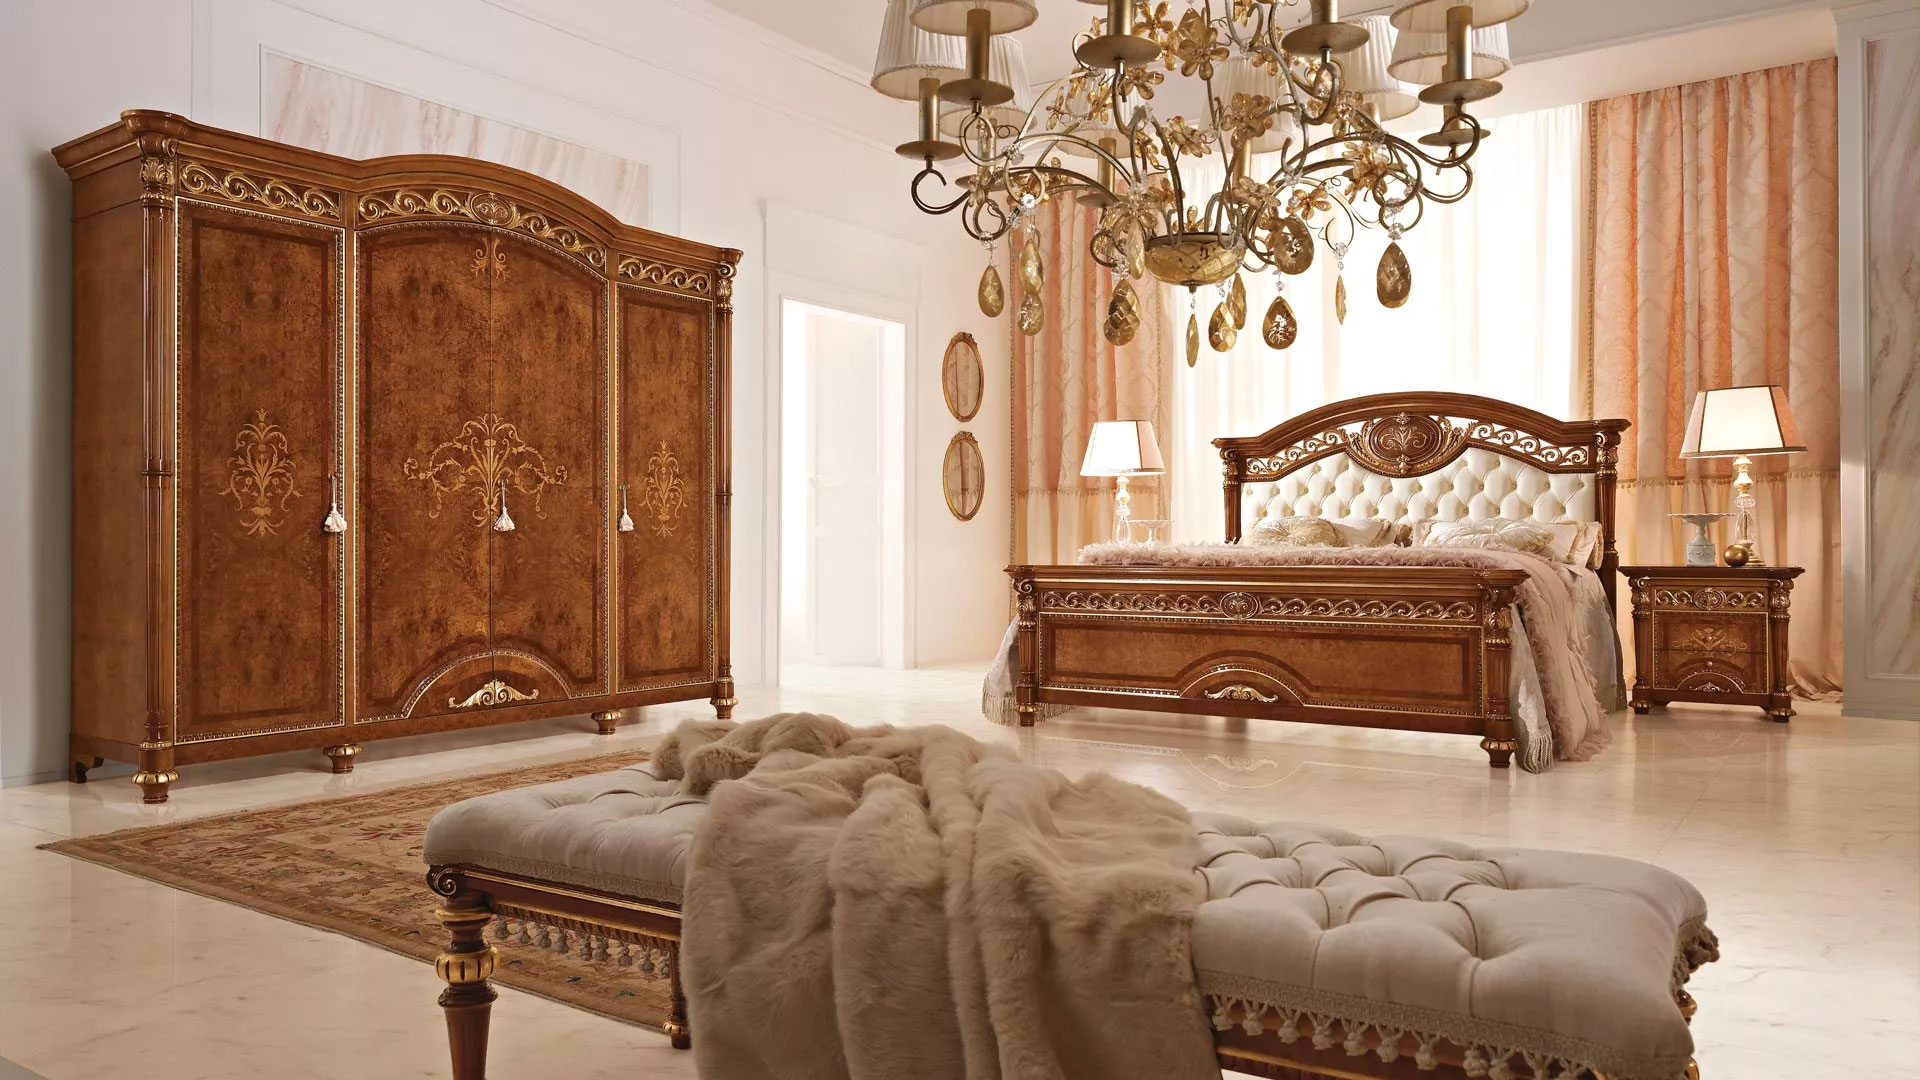 Camere da letto in stile valderamobili for Stile contemporaneo mobili